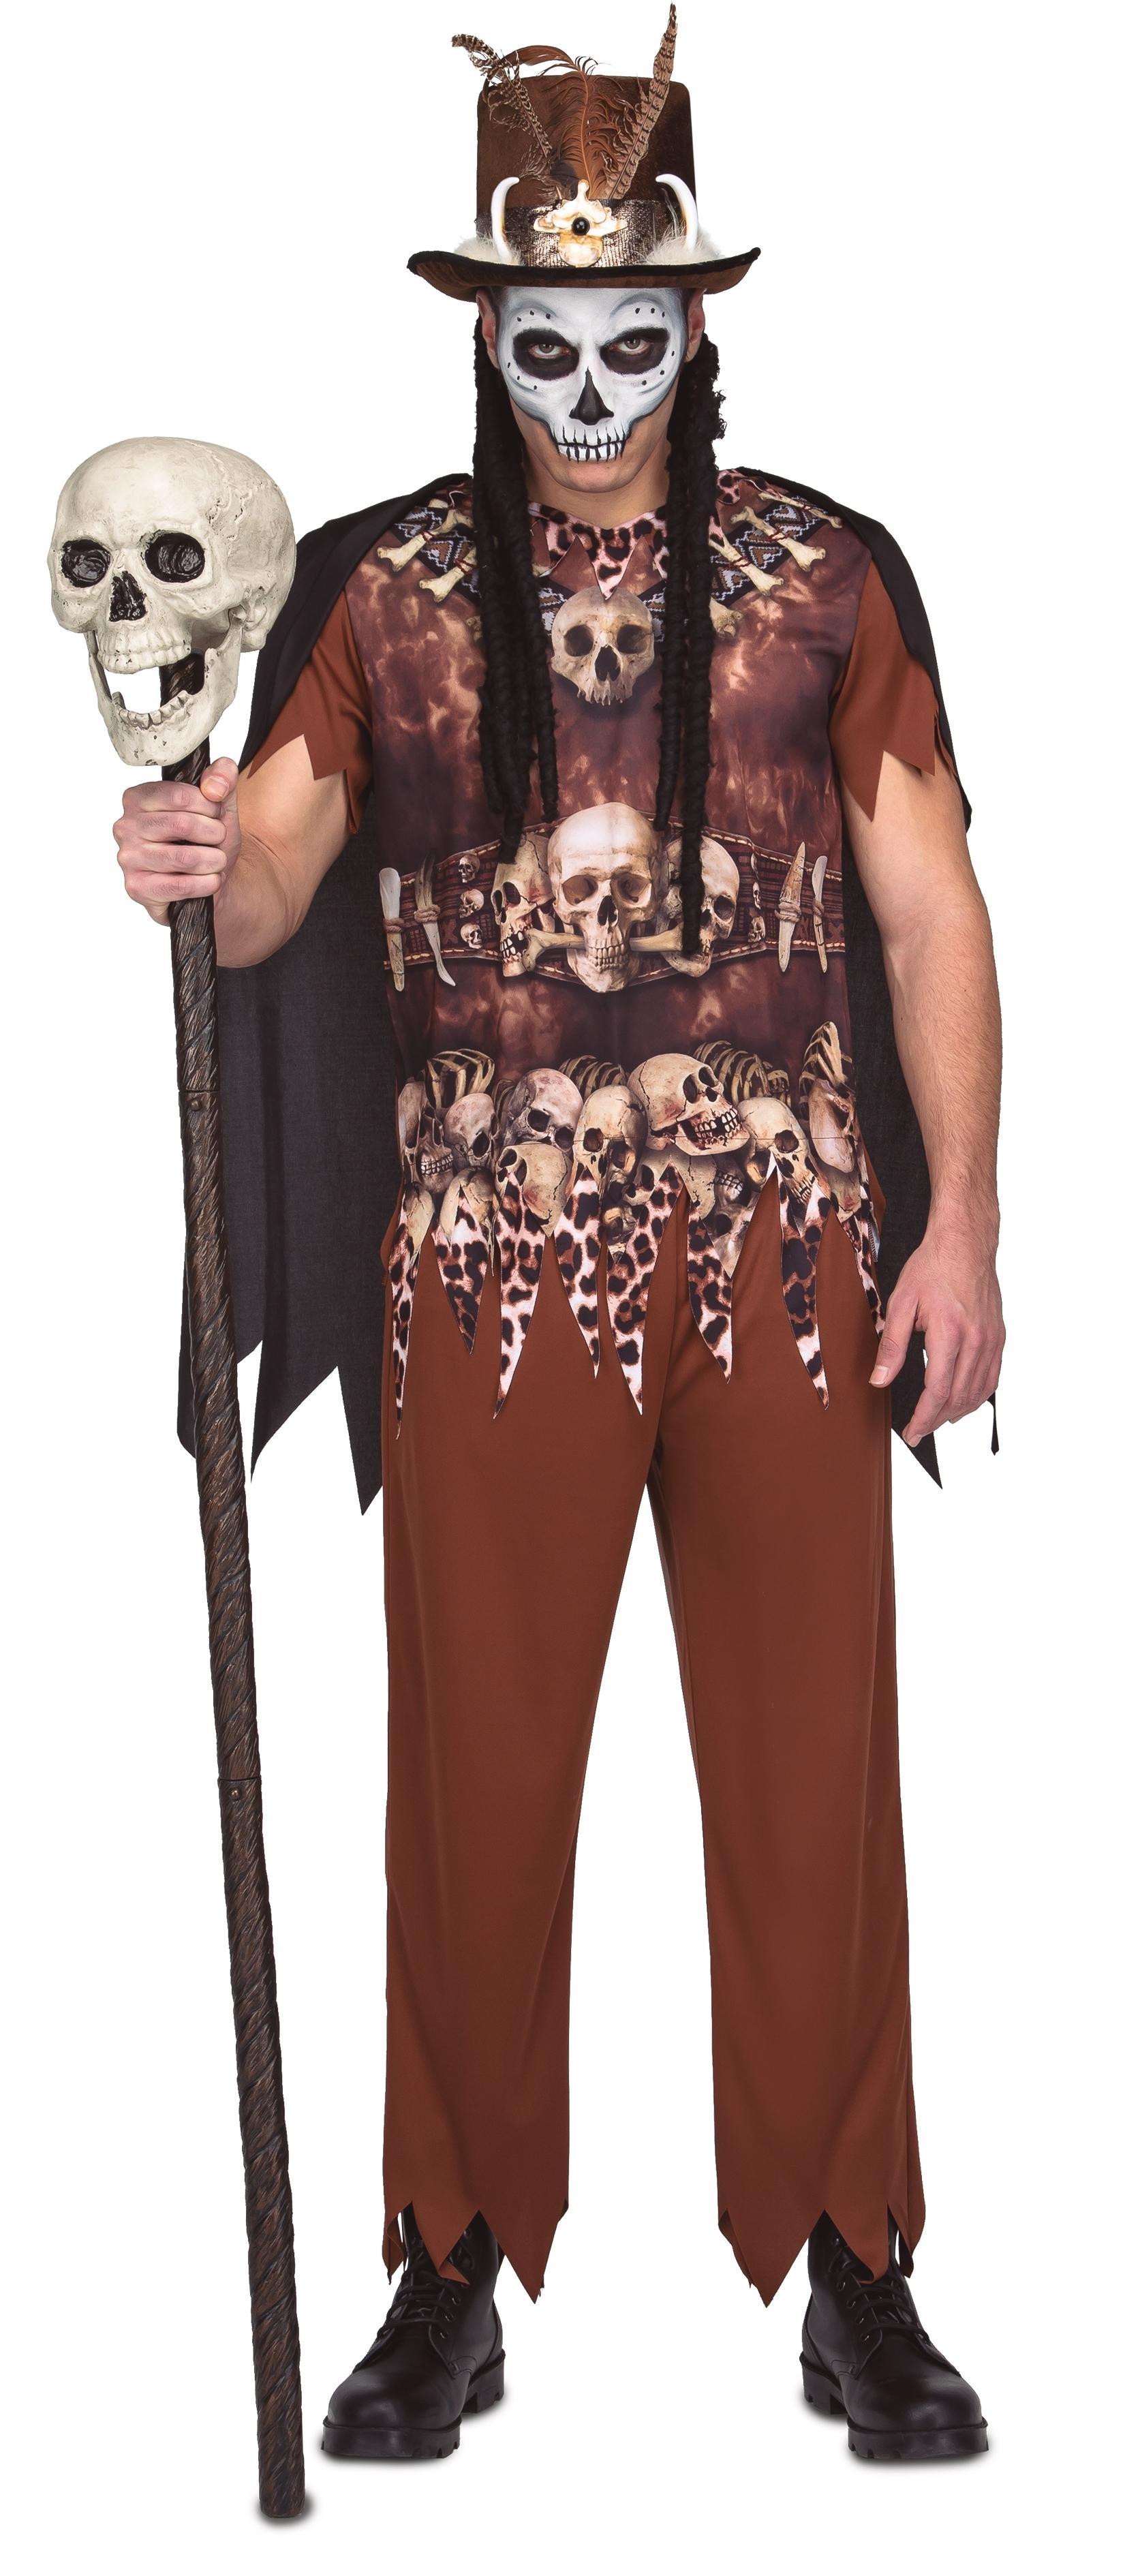 Disfraz de prisionero caníbal hombre Halloween: Disfraces adultos,y  disfraces originales baratos - Vegaoo